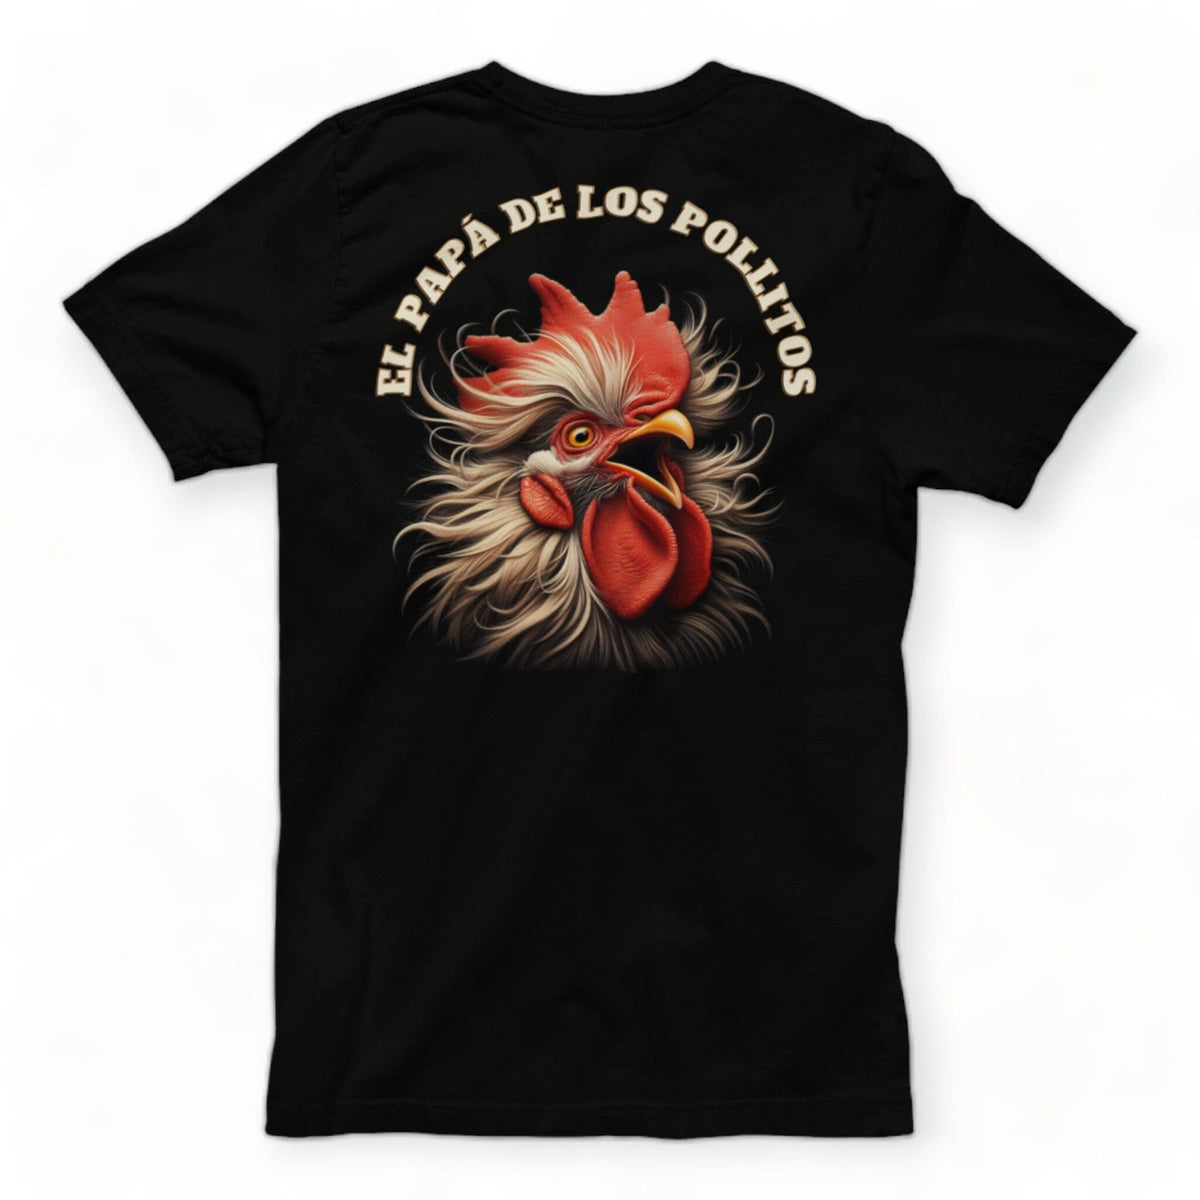 T-shirt Personalizada "El Papá de los Pollitos" 🐥 - ¡El Regalo Ideal para Papá! T-Shirt Printify 